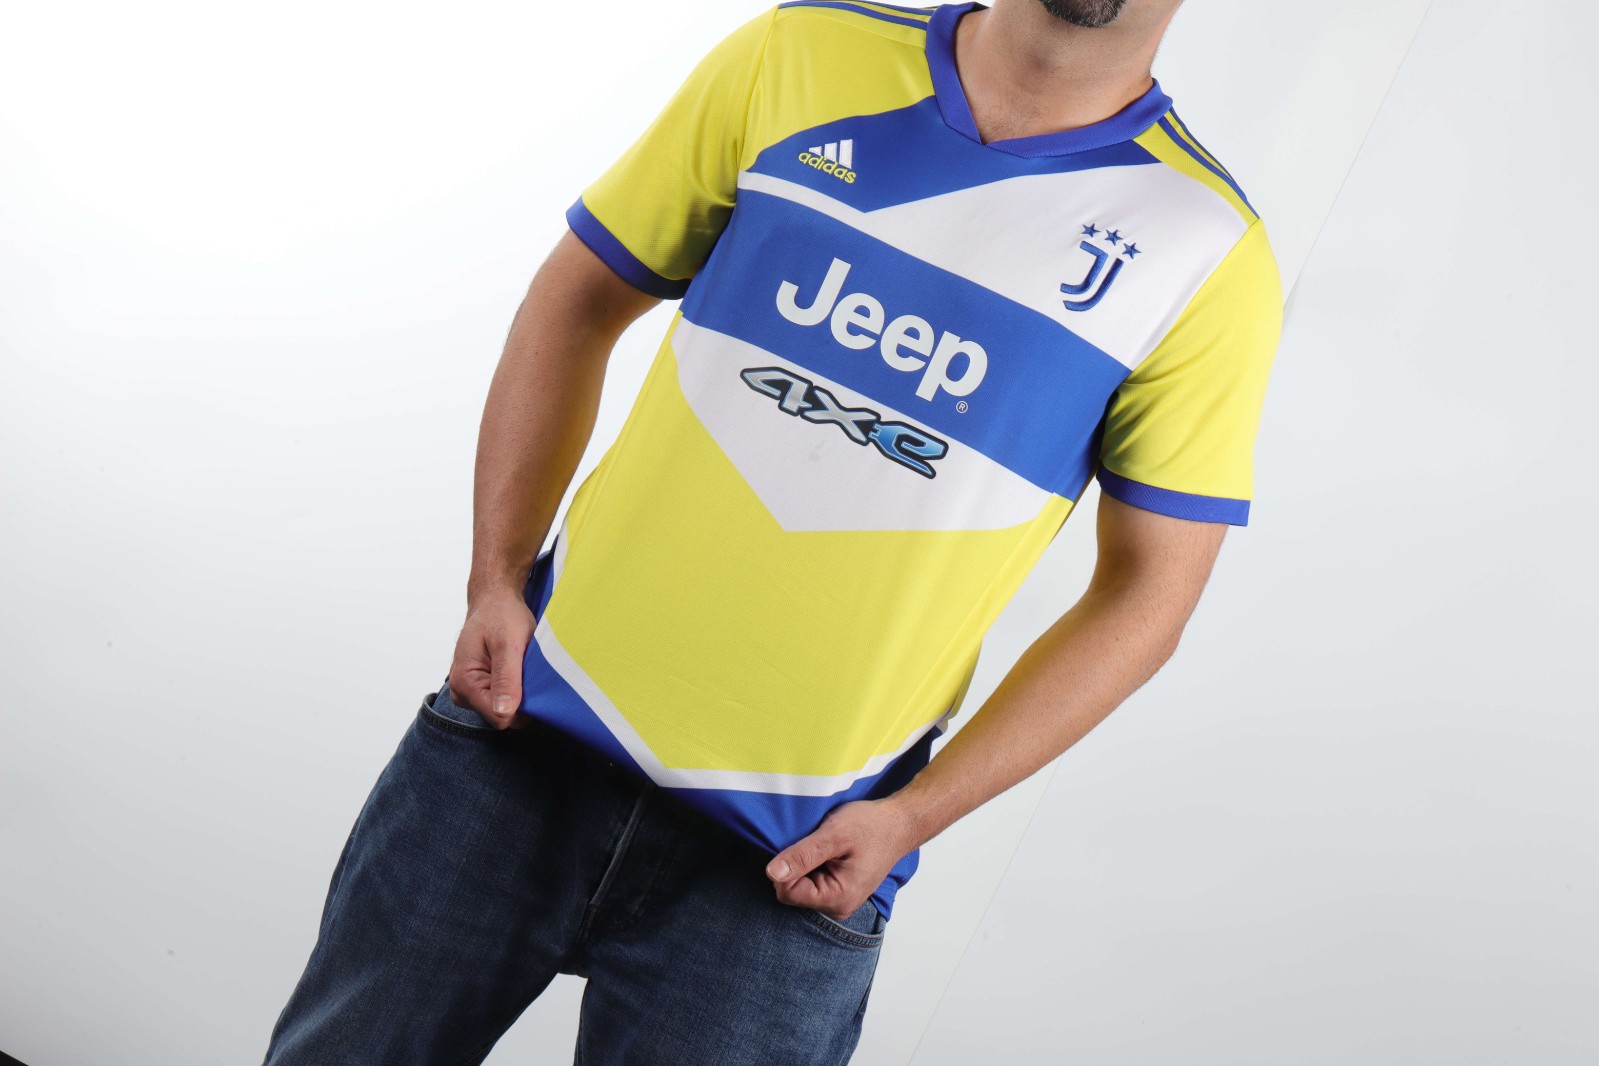 Replia Juventus third away jersey 2021-22 | Pro Jersey Shop